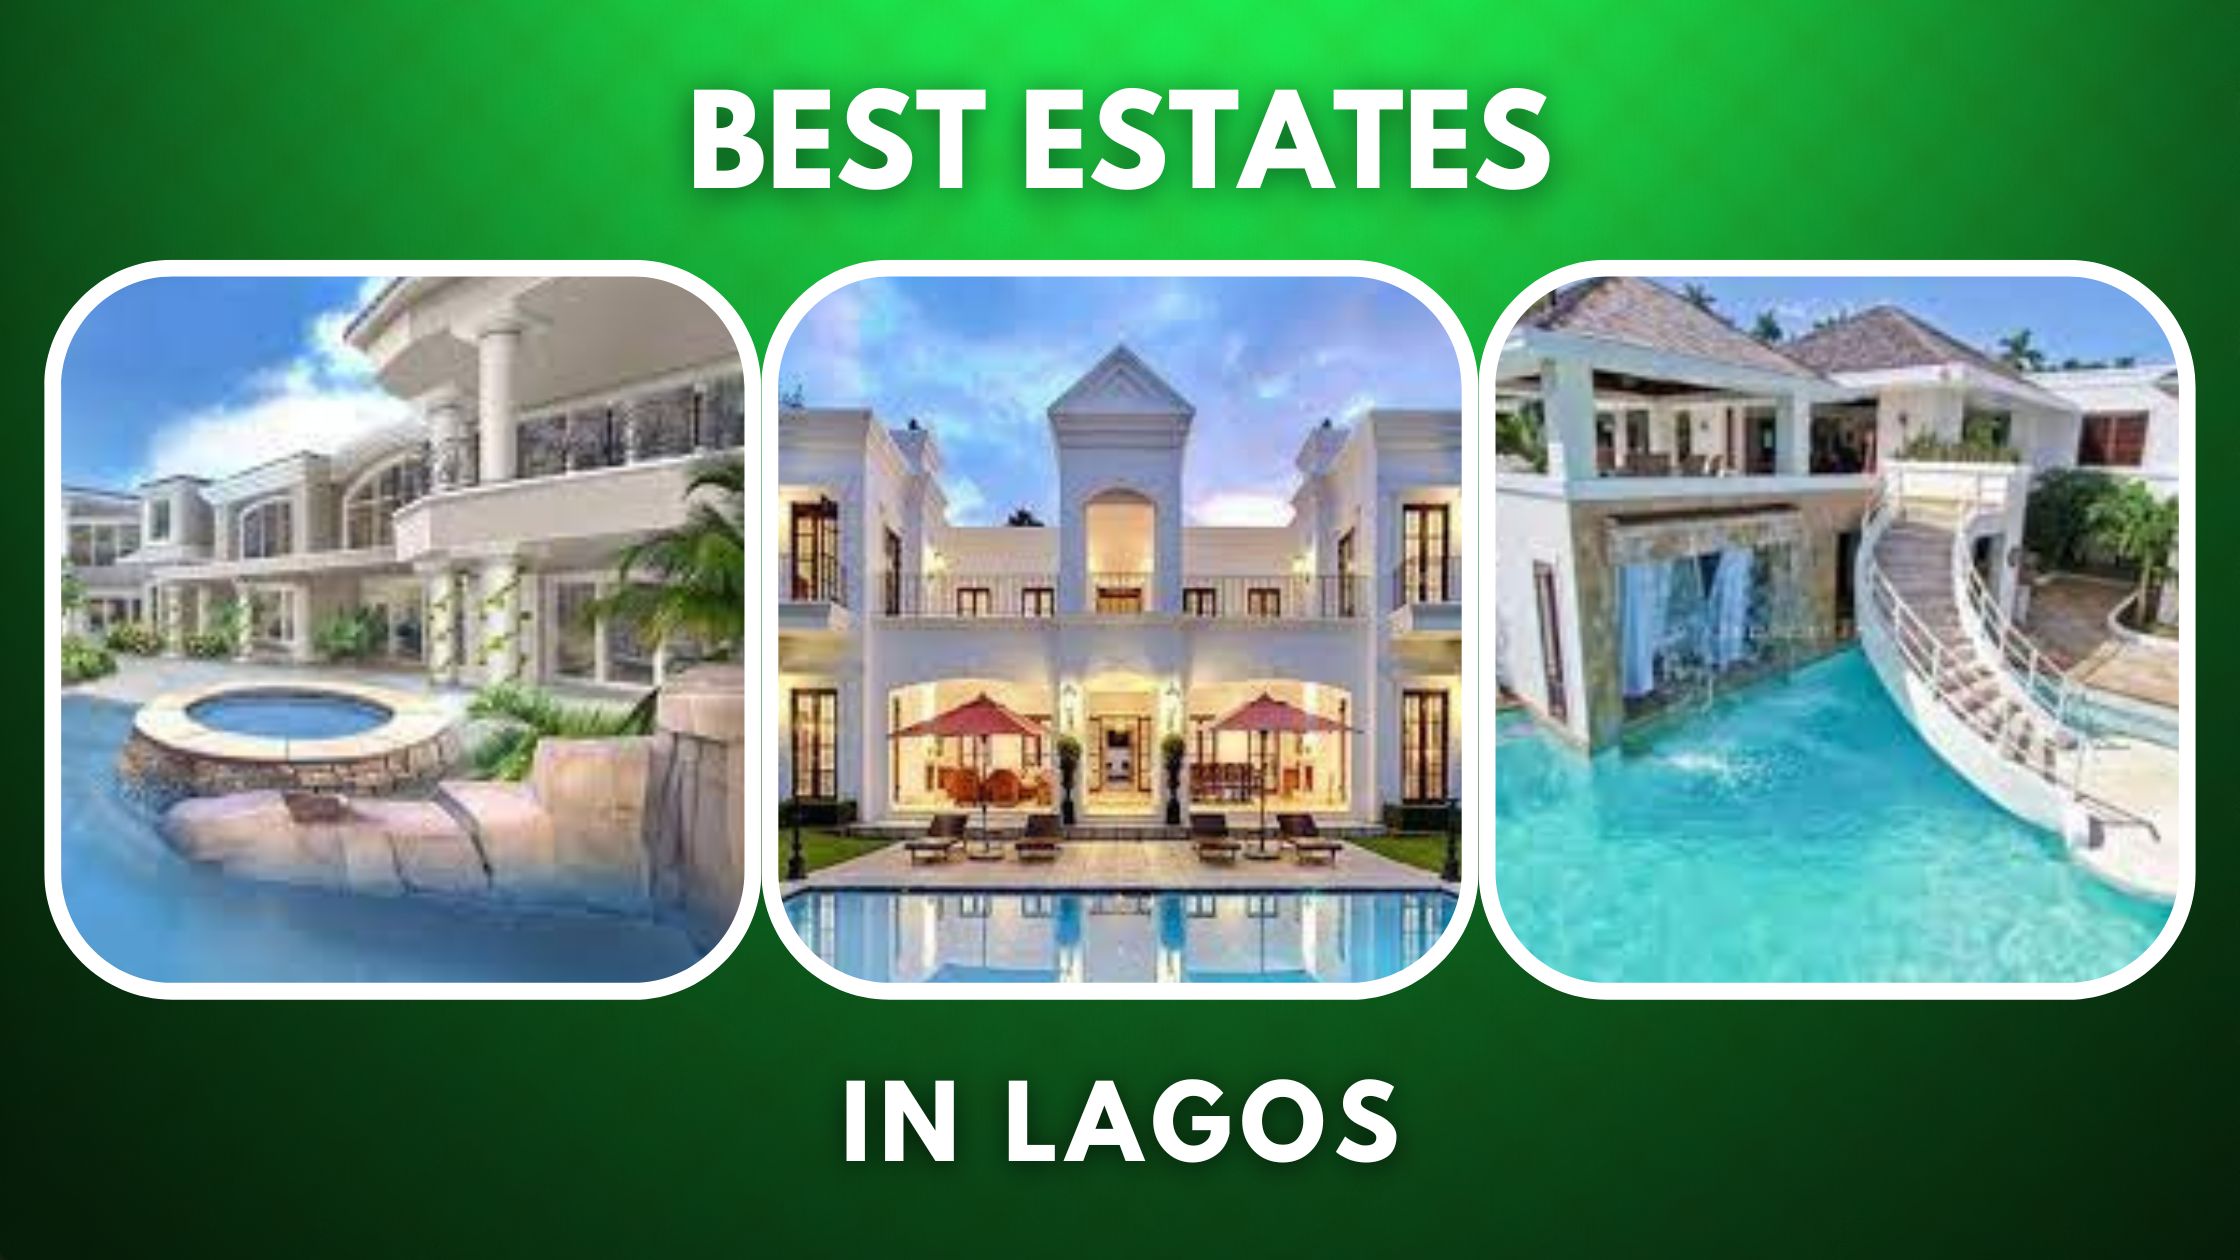 Top 10 Best Estates in Lagos